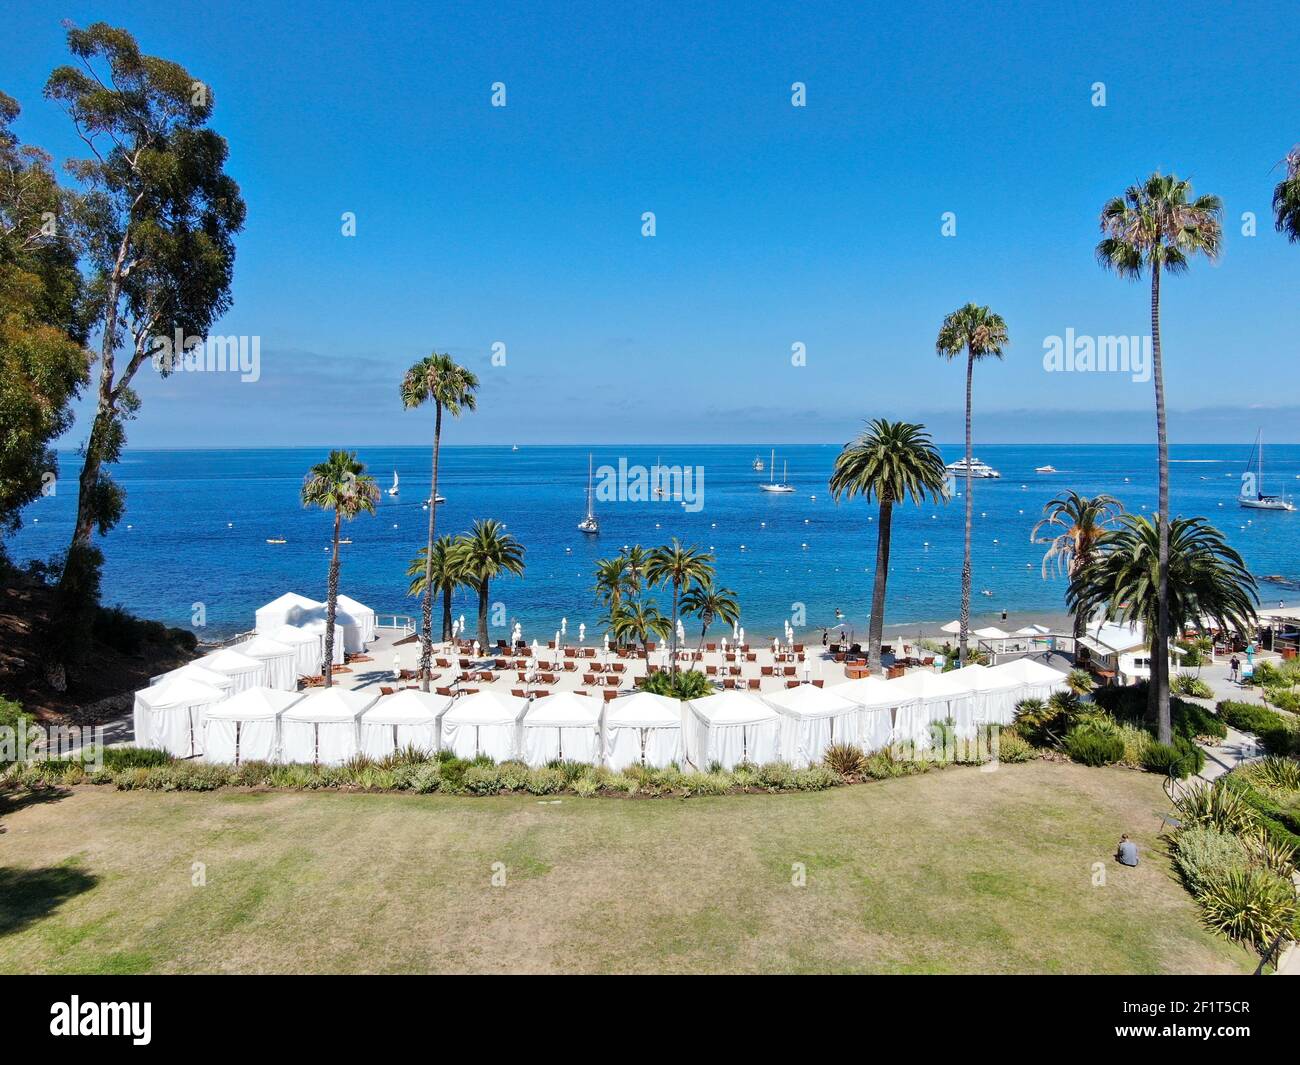 Club de playa descanso, Isla Santa Catalina, Estados Unidos Foto de stock